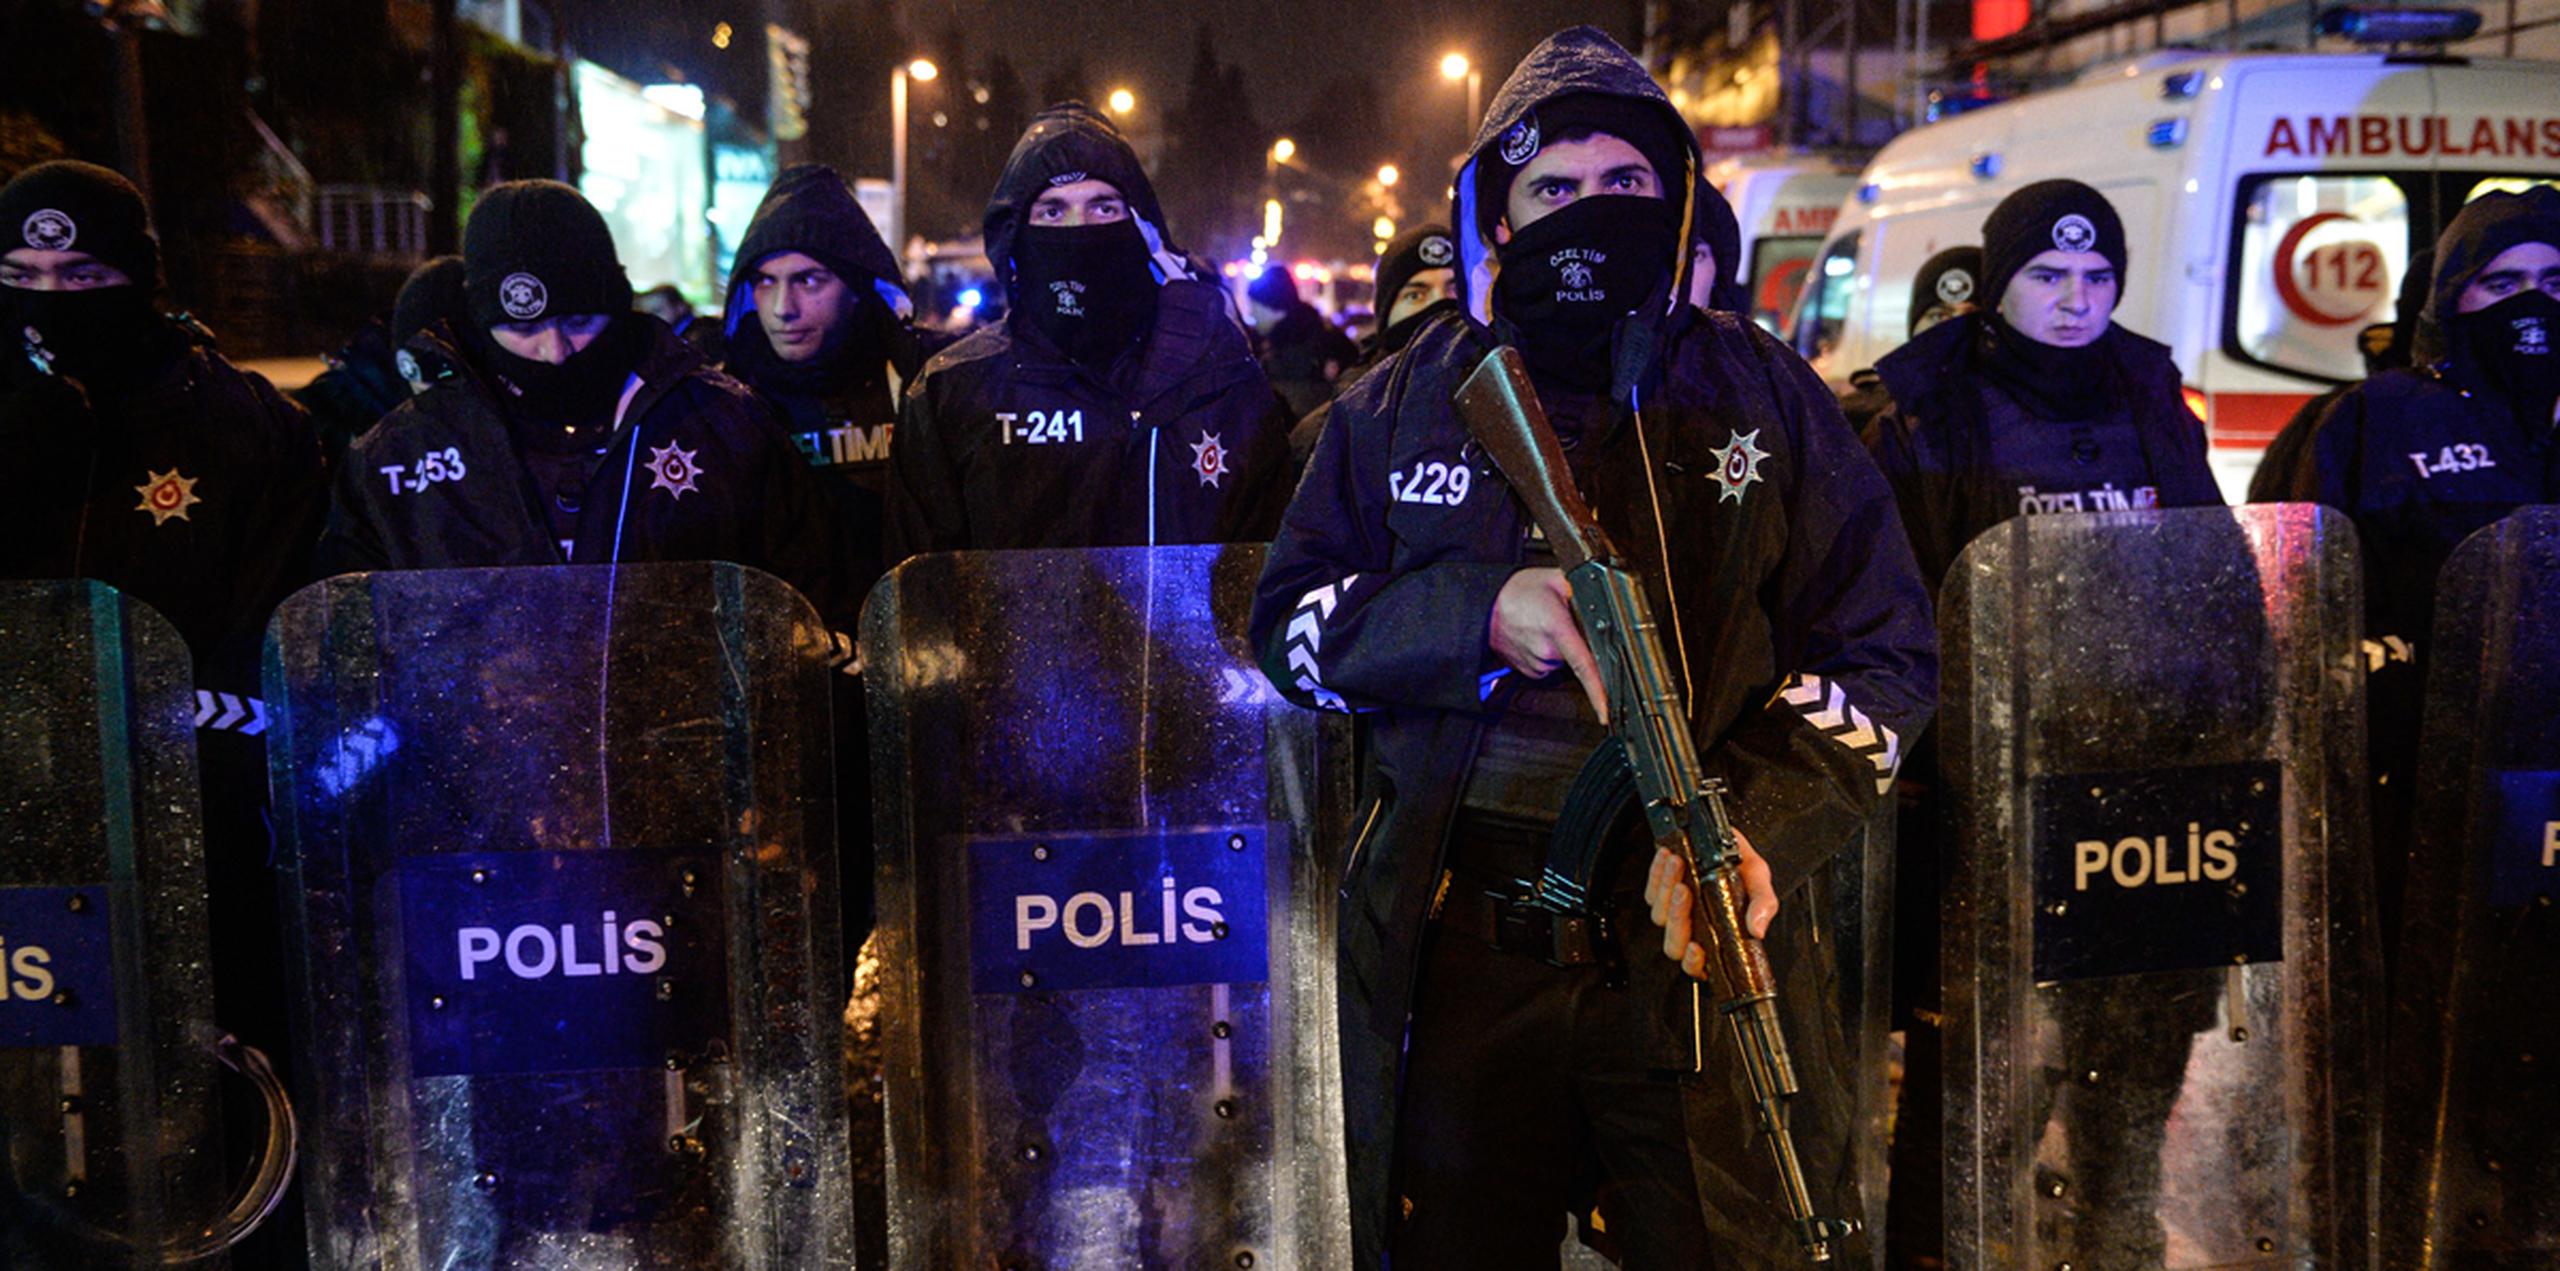 Según la agencia de noticias privada Dogan, la operación policial estaría dirigida contra tres familias que llegaron a Izmir hace unos 20 días. (AP)